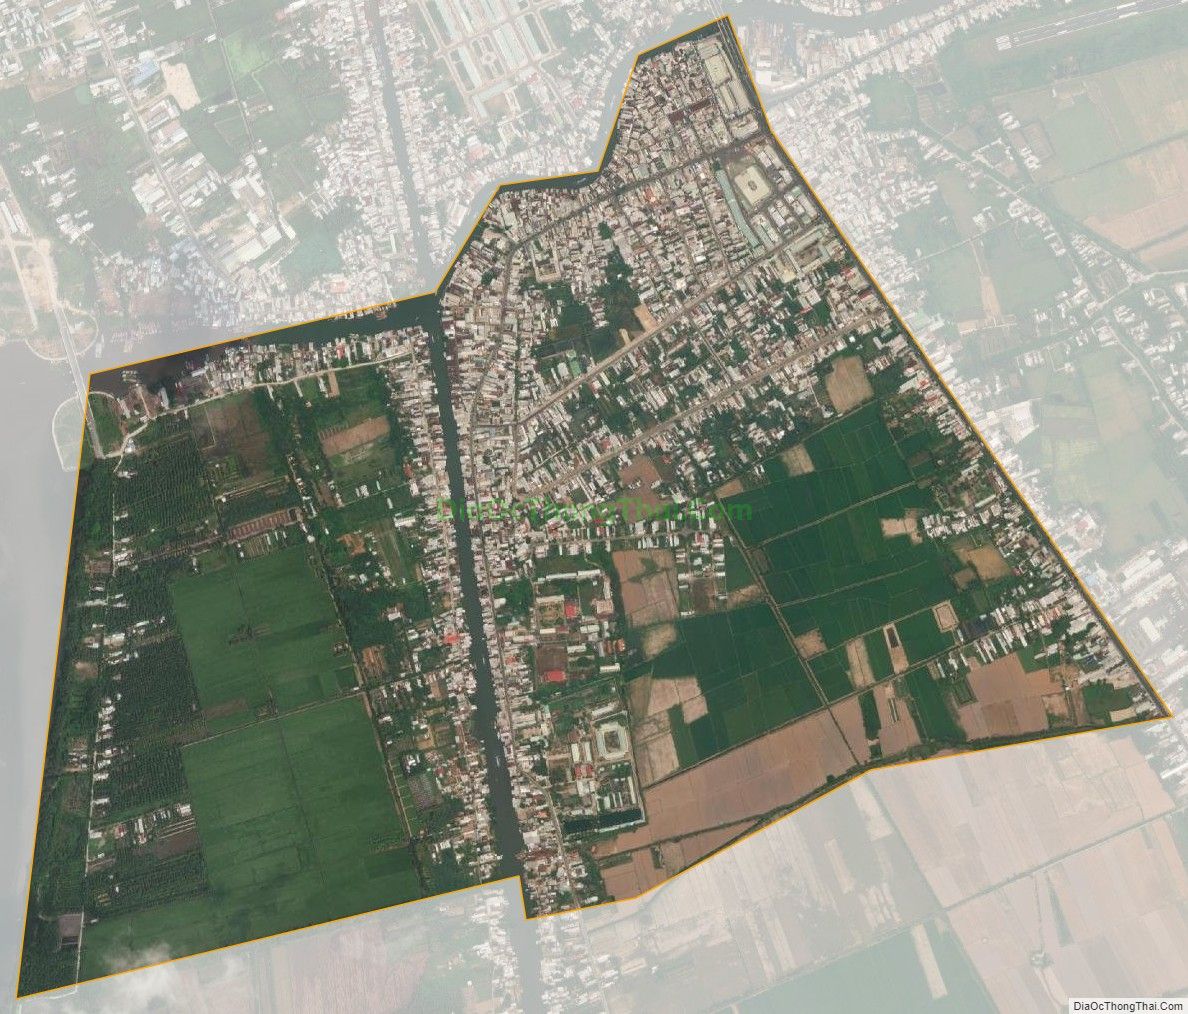 Bản đồ vệ tinh phường Rạch Sỏi, thành phố Rạch Giá